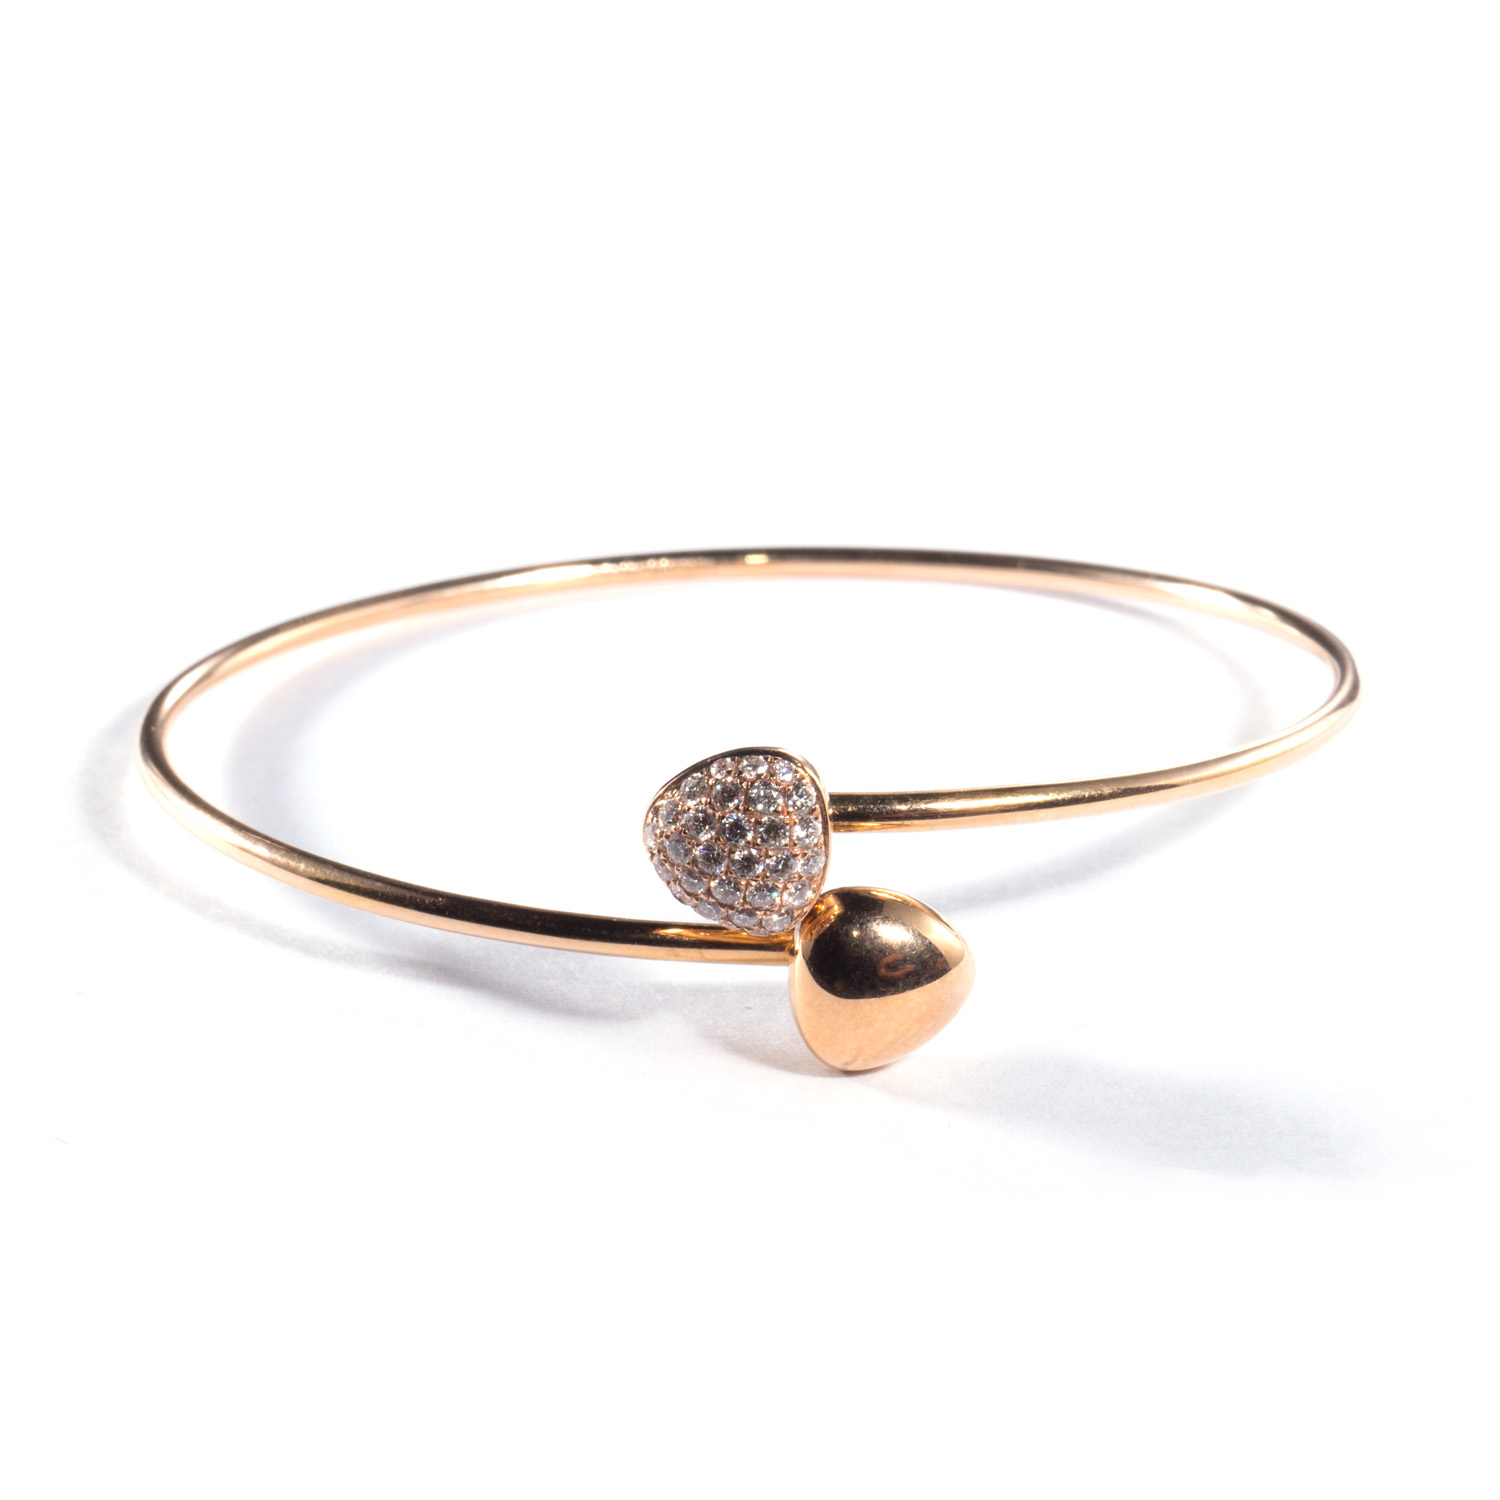 voordelig Betrokken elleboog Geel gouden armband met 30 diamantjes - Juwelenhuis Ruys